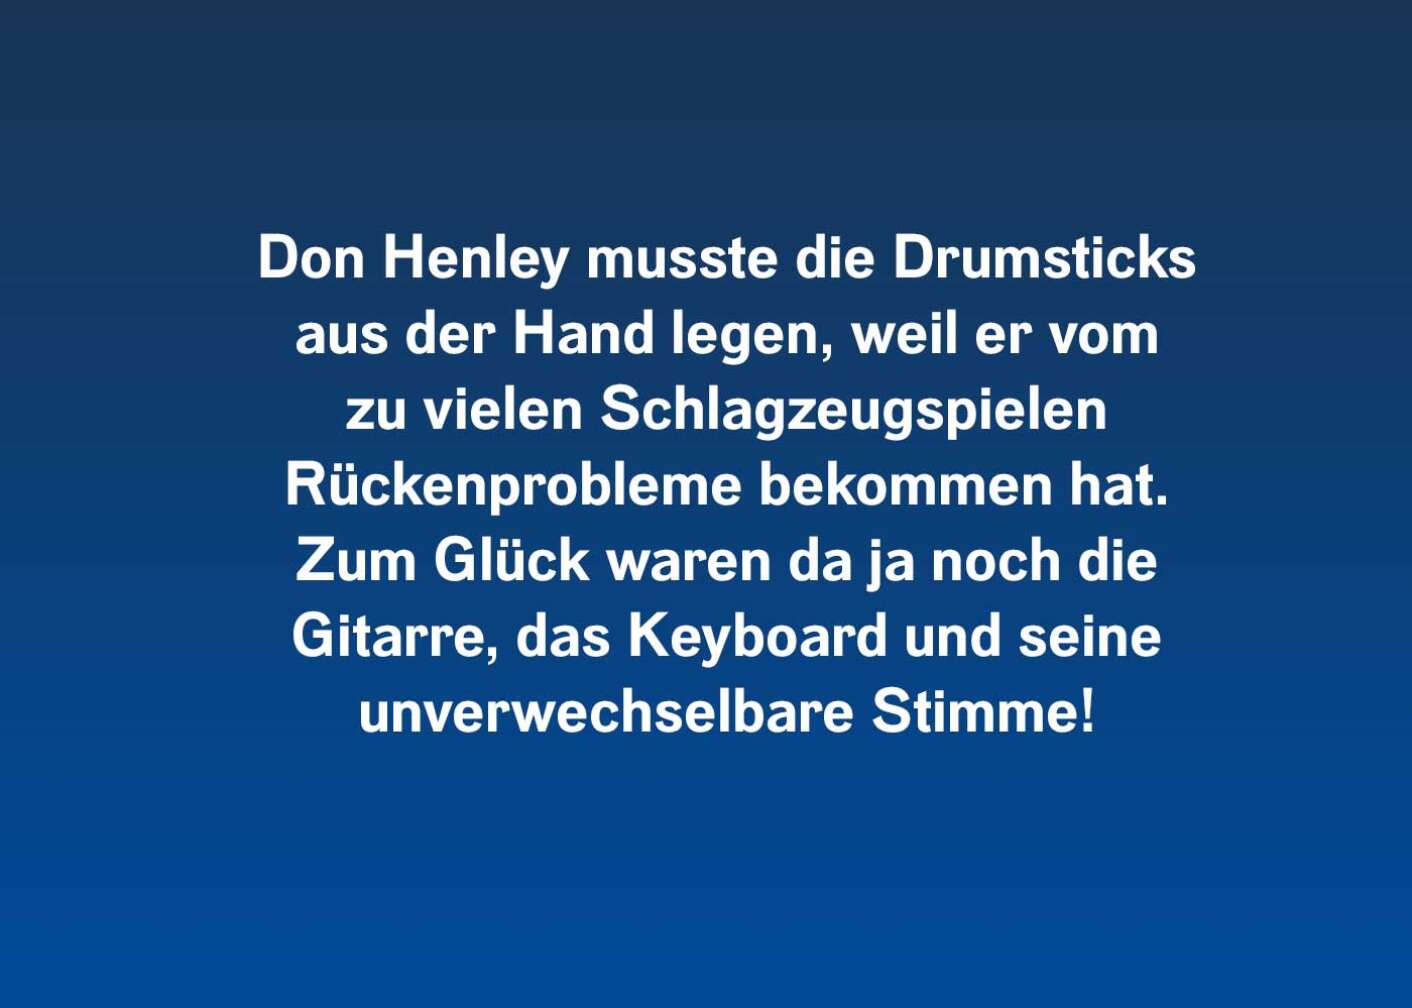 10 Fakten über Don Henley (musste die Drumsticks)